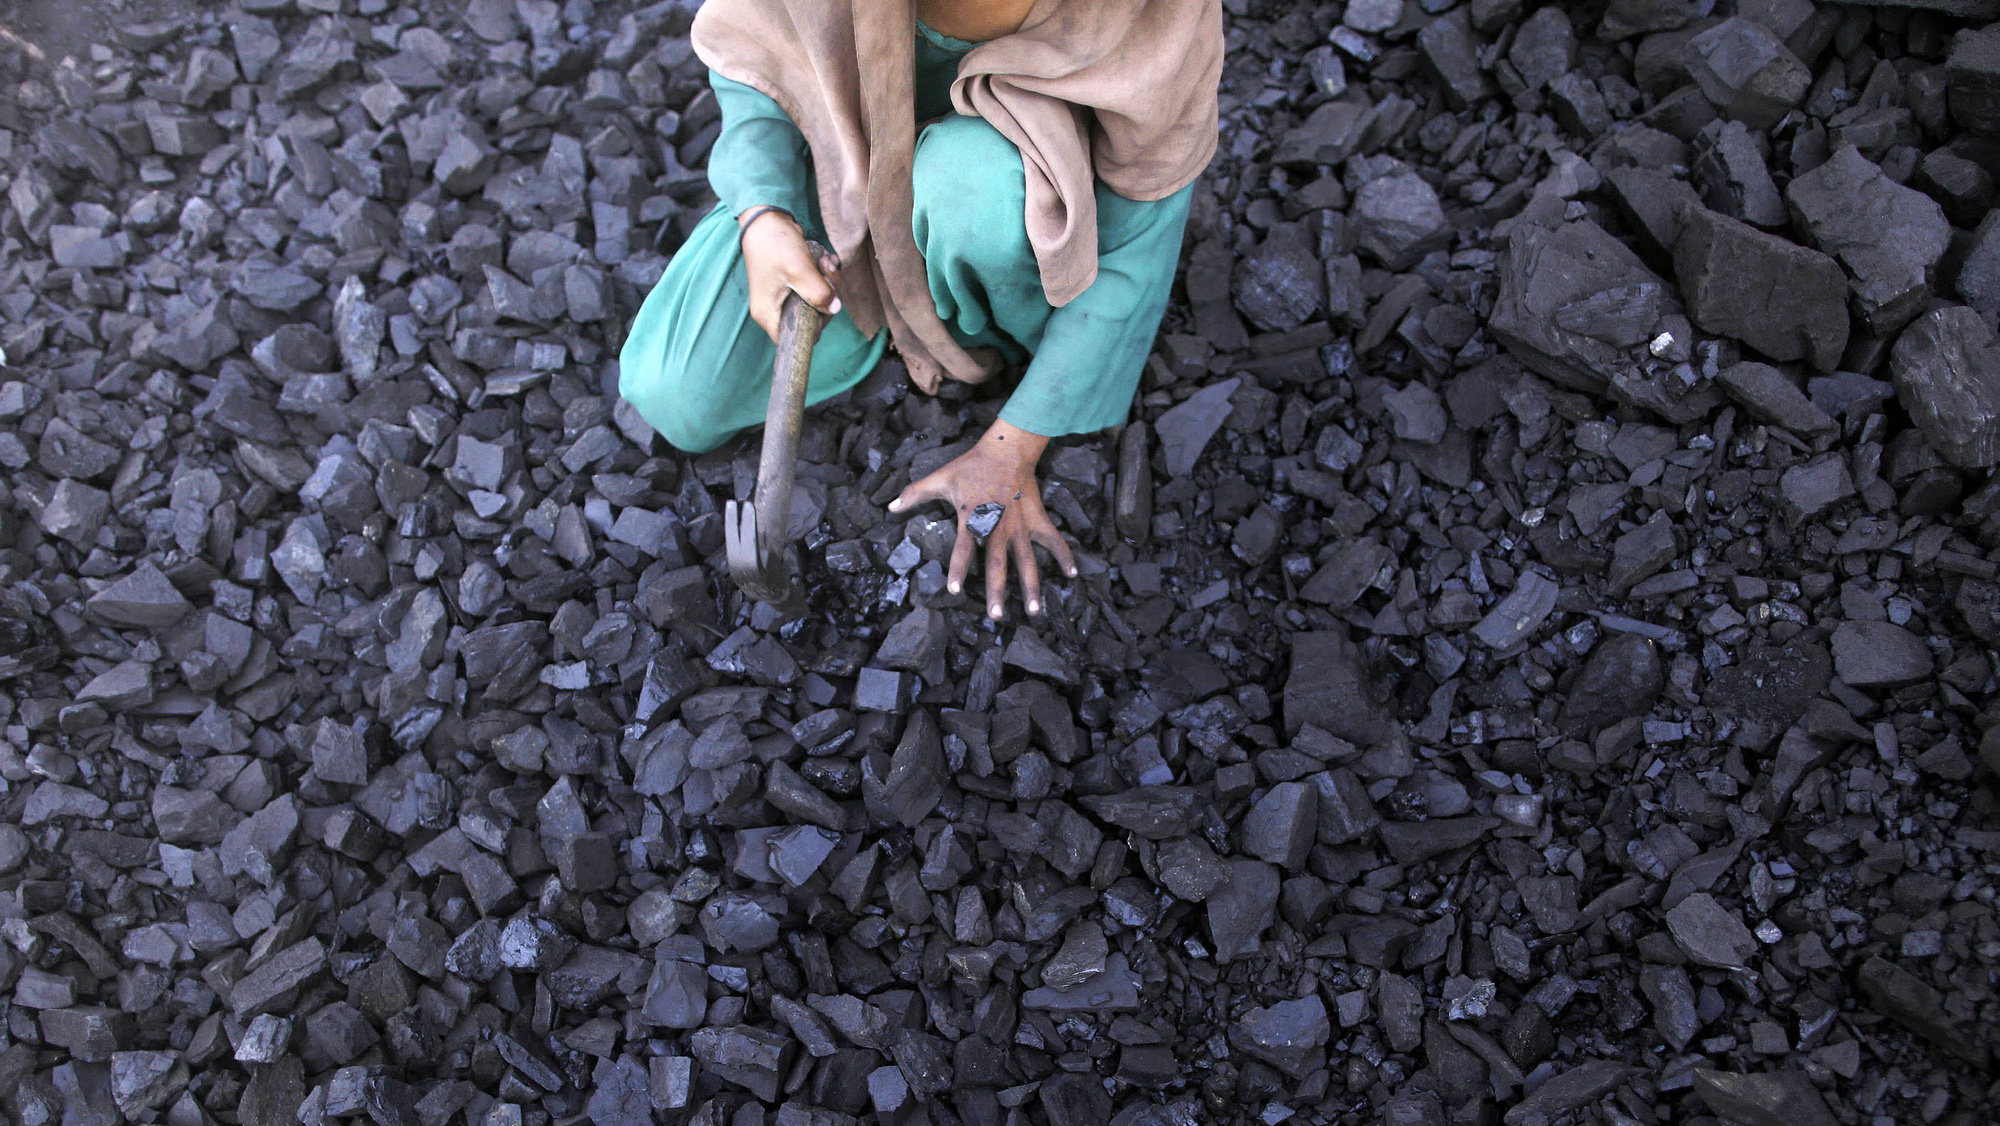 Trung Quốc đang làm gì tại mỏ than lớn nhất Pakistan? - Ảnh 1.